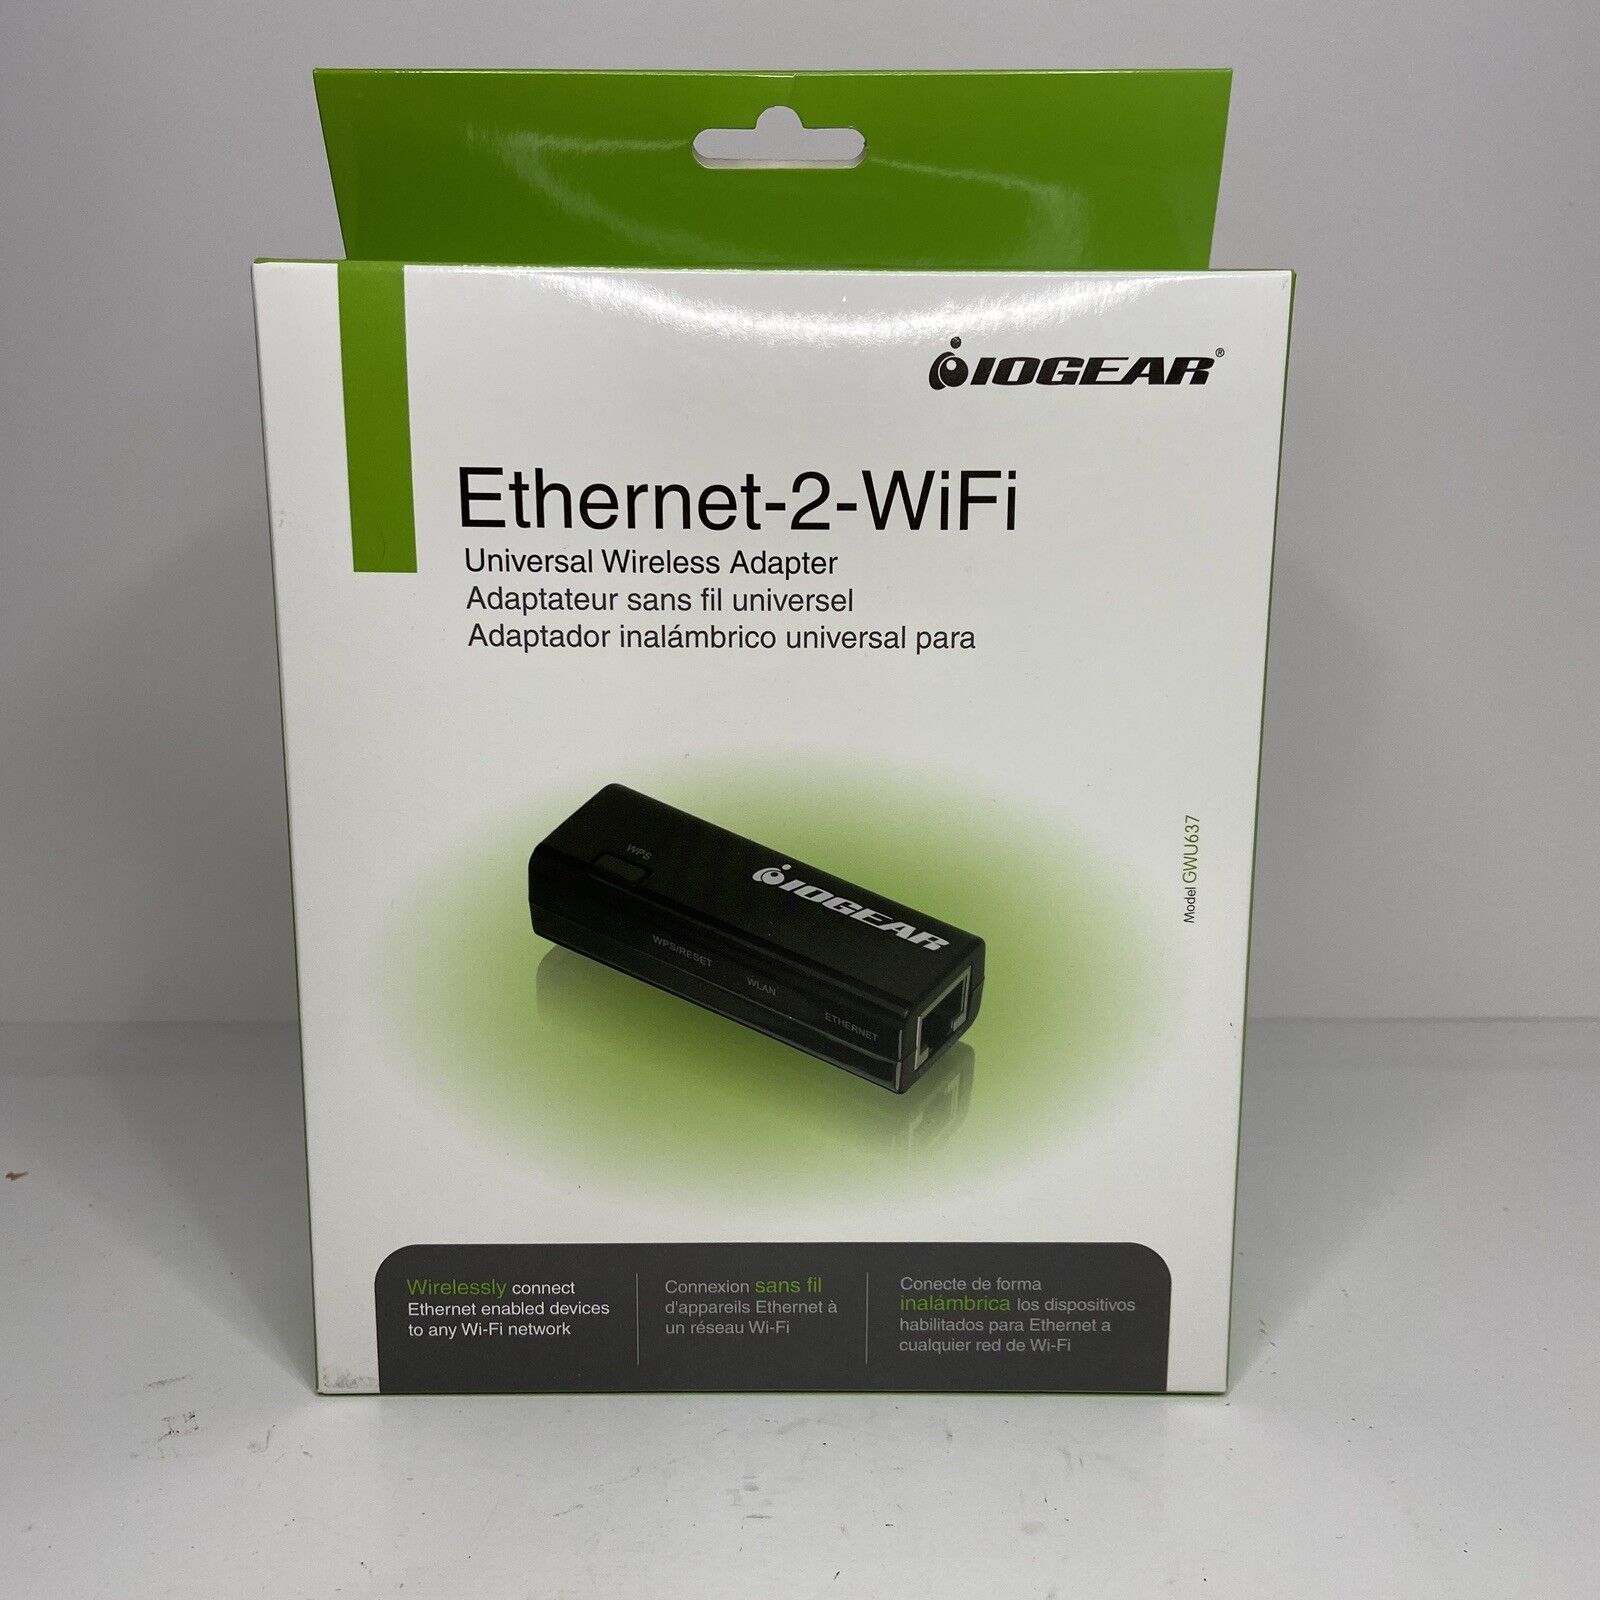 *IOGEAR Ethernet-2-WiFi Universal Wireless Adapter, NEW*